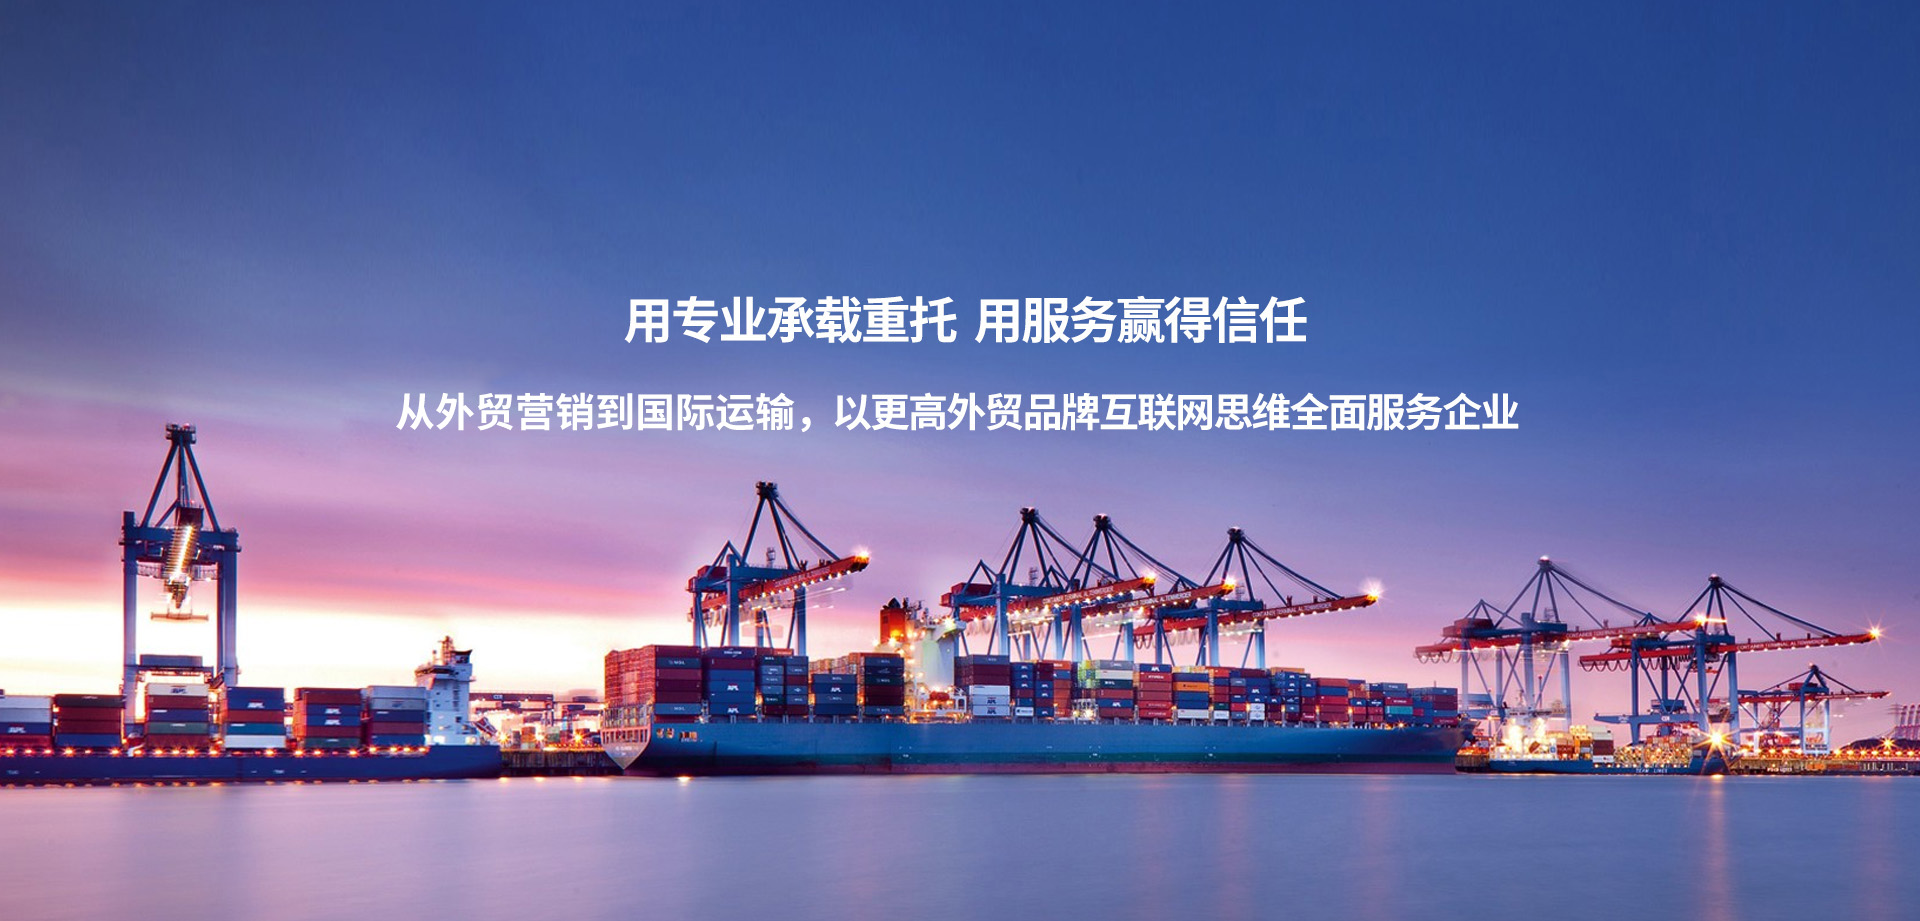 国际货物运输代理服务||江苏公海贵宾会国际货运代理有限公司